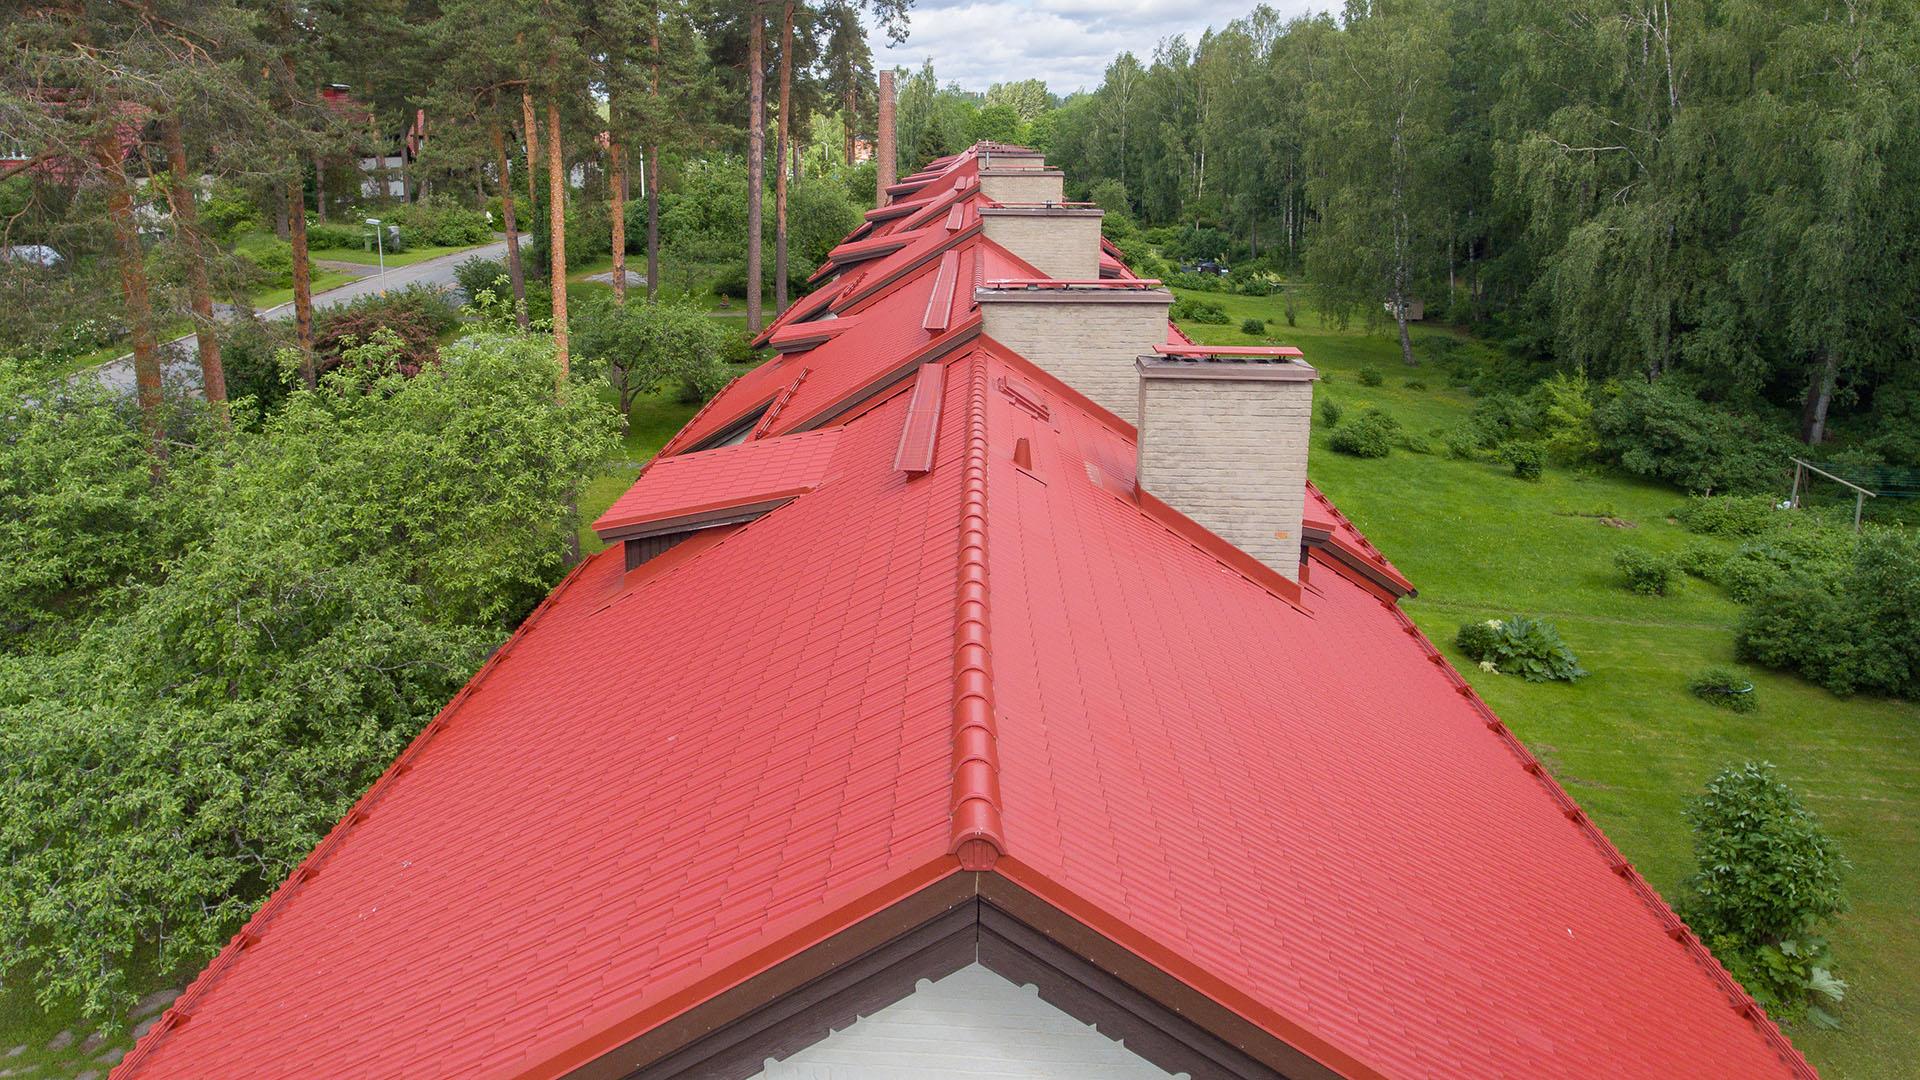 Jos katon kunto arveluttaa, kannattaa pyytää katon kuntoarvion ammattilaiselta, jolloin perusteellisen tarkastuksen lisäksi saadaan arvio siitä, miten juuri kyseinen katto remontoidaan parhaalla tavalla. BMI Ormaxin valtuutetut kattoasentajat ovat luotettava ja turvallinen valinta asiantuntijaa haettaessa.